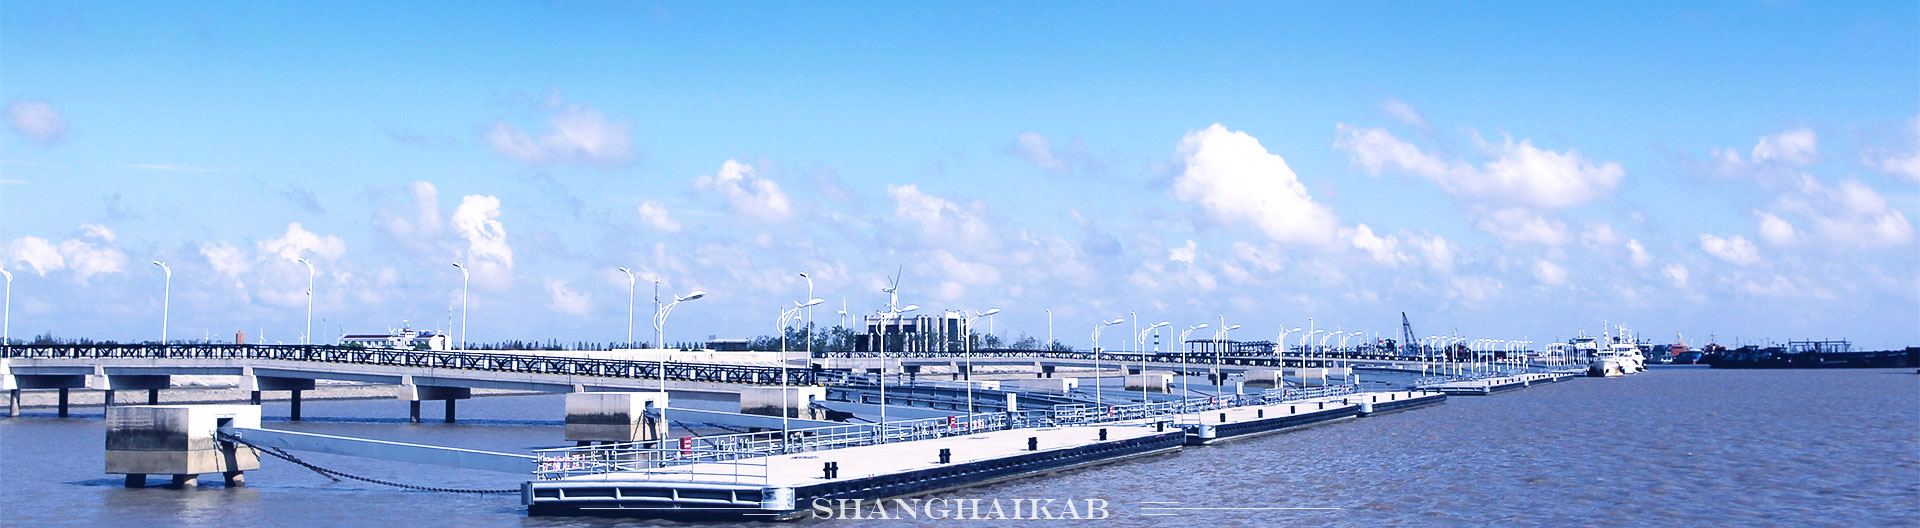 水运口岸-上海横沙岛渔港